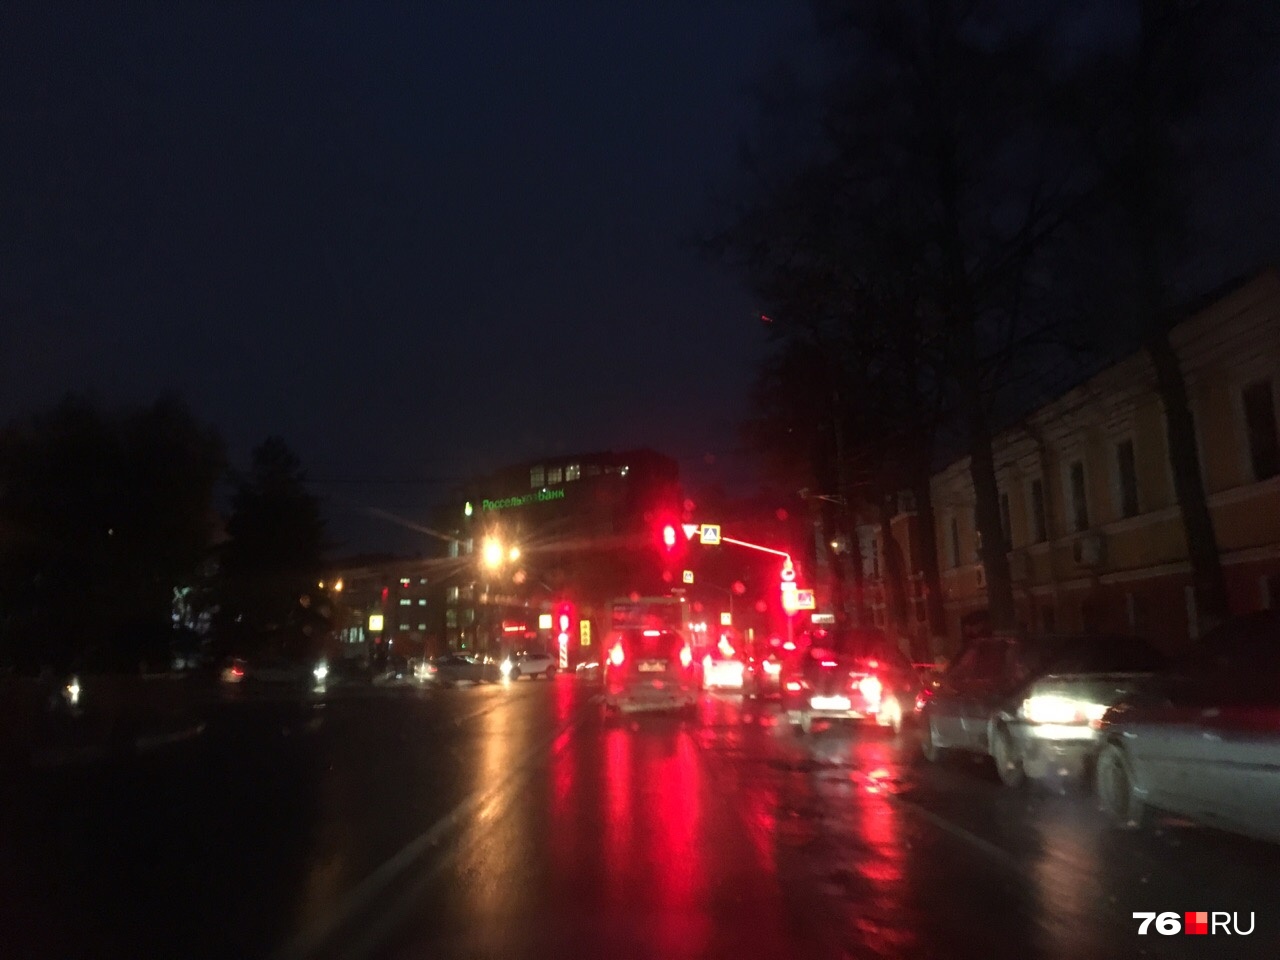 Оживленная улица в центре Ярославля погрузилась во тьму